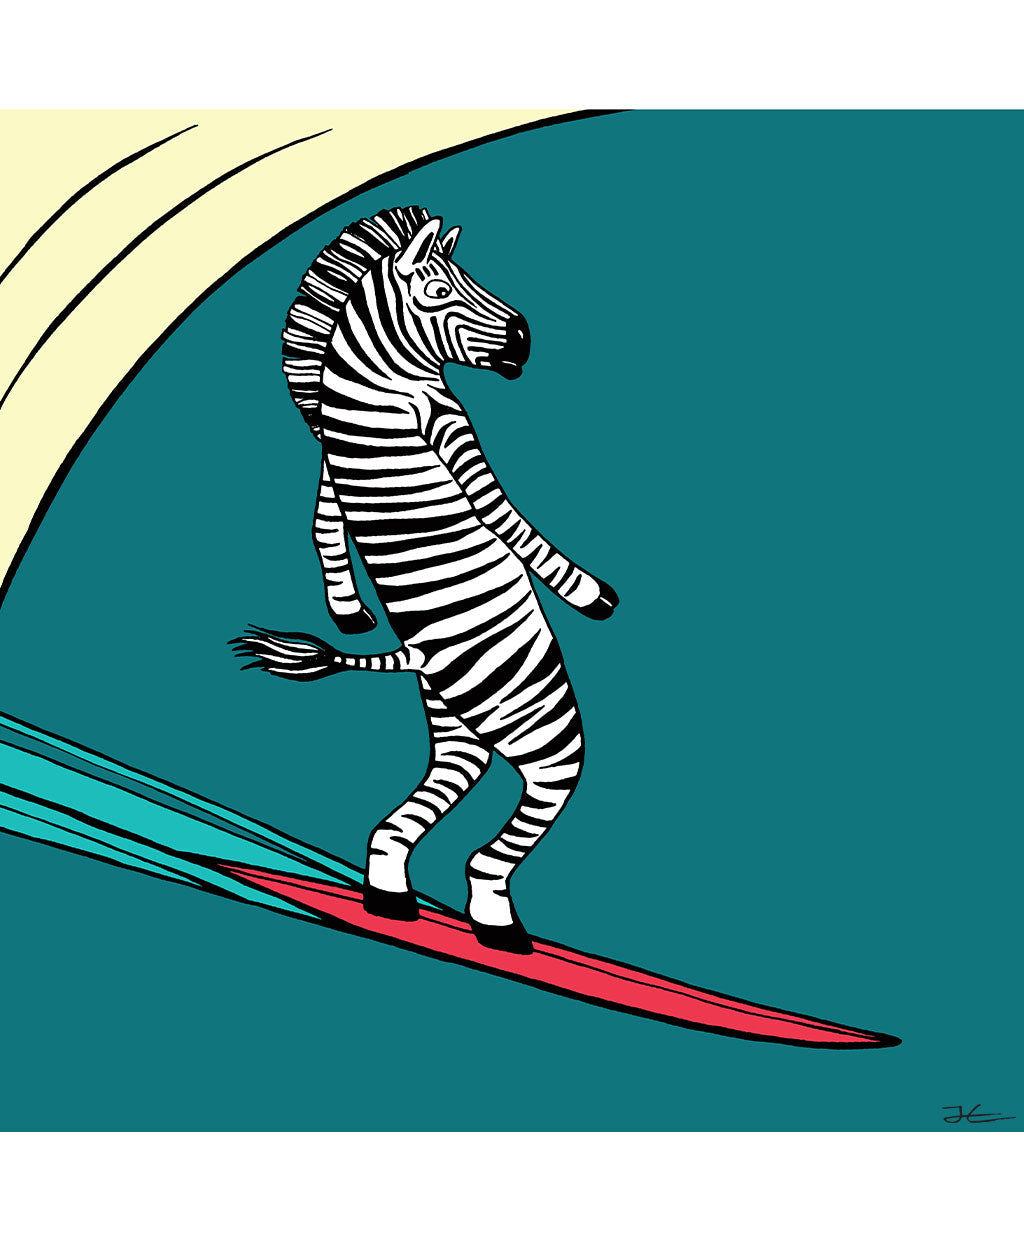 Surfing Zebra - Print/ Framed Print